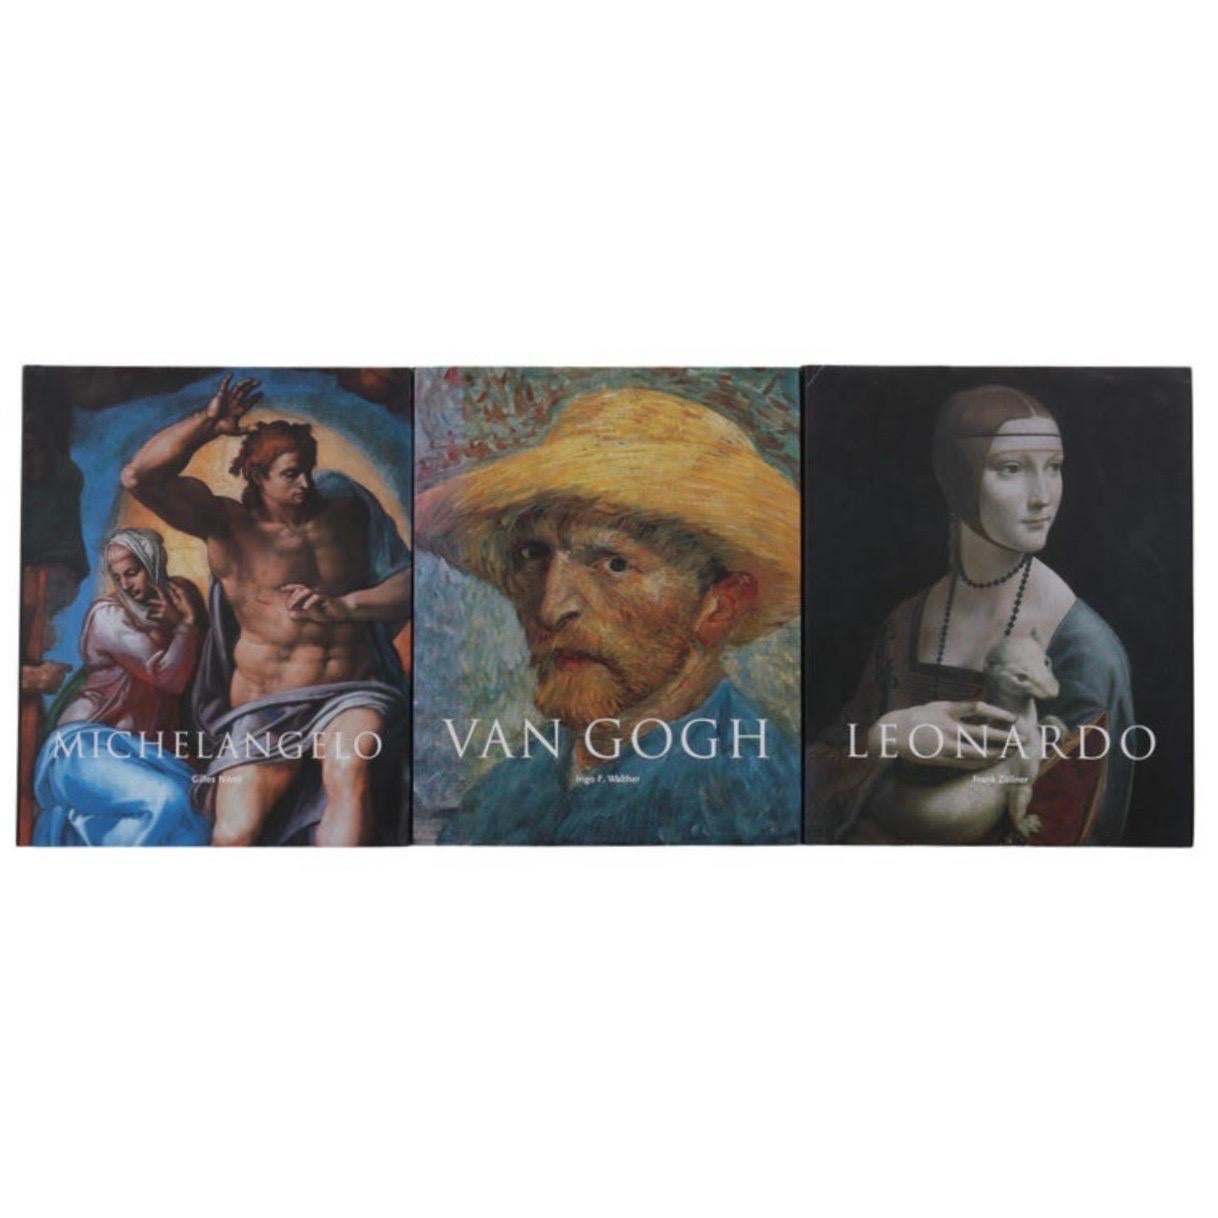 Bücher von Leonardo, Michelangelo und Van Gogh